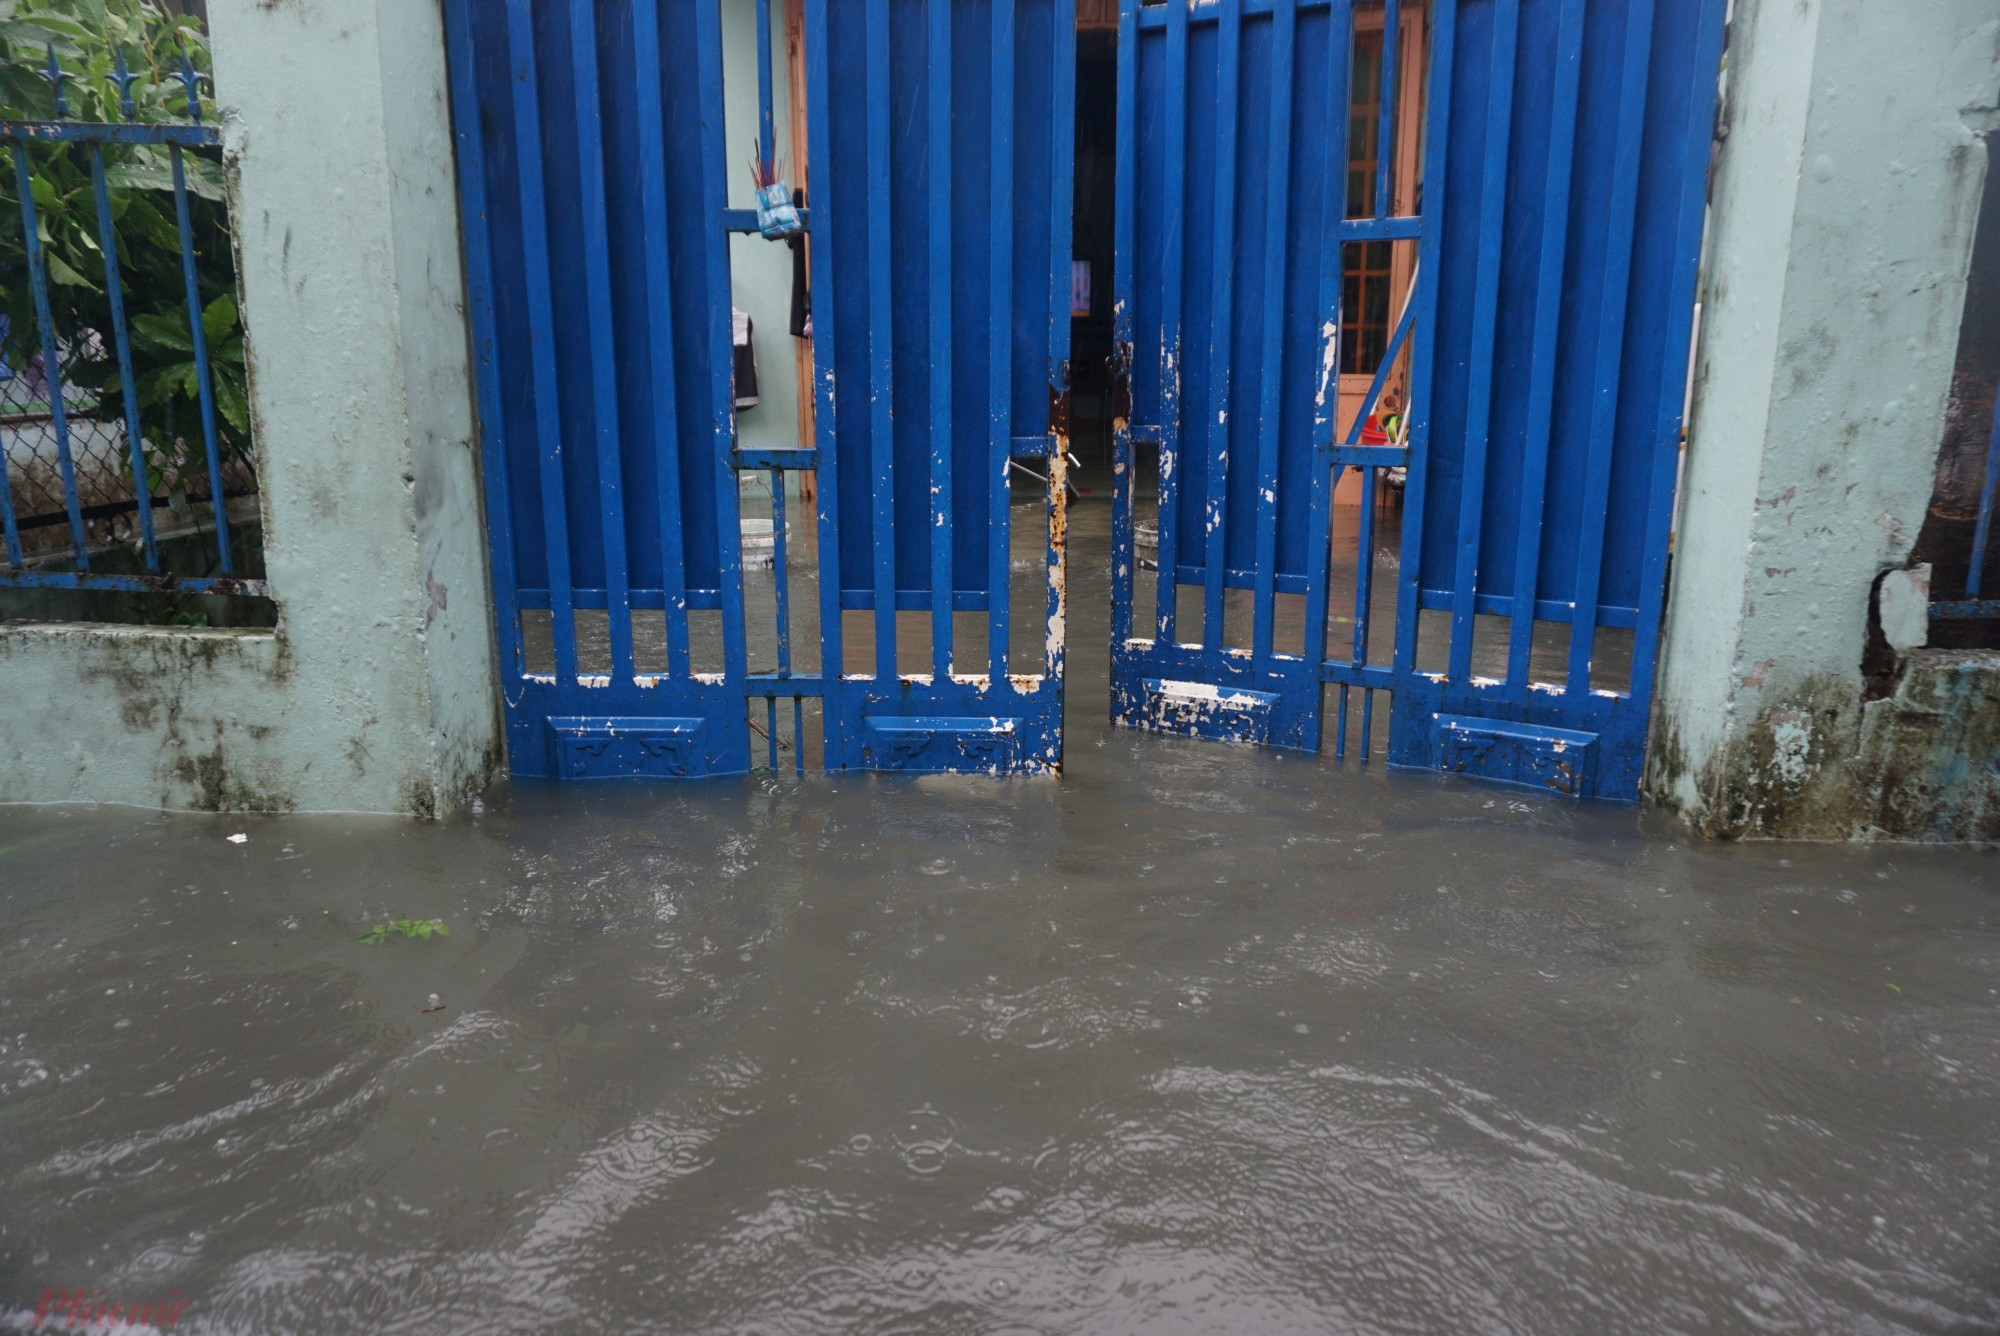 Ông Huỳnh Tấn Đức, tổ trưởng tổ 26, cho biết tổ có hơn 70 hộ dân nhưng có đến 37 hộ bị ngập nước, nhiều nhà ngập sâu.